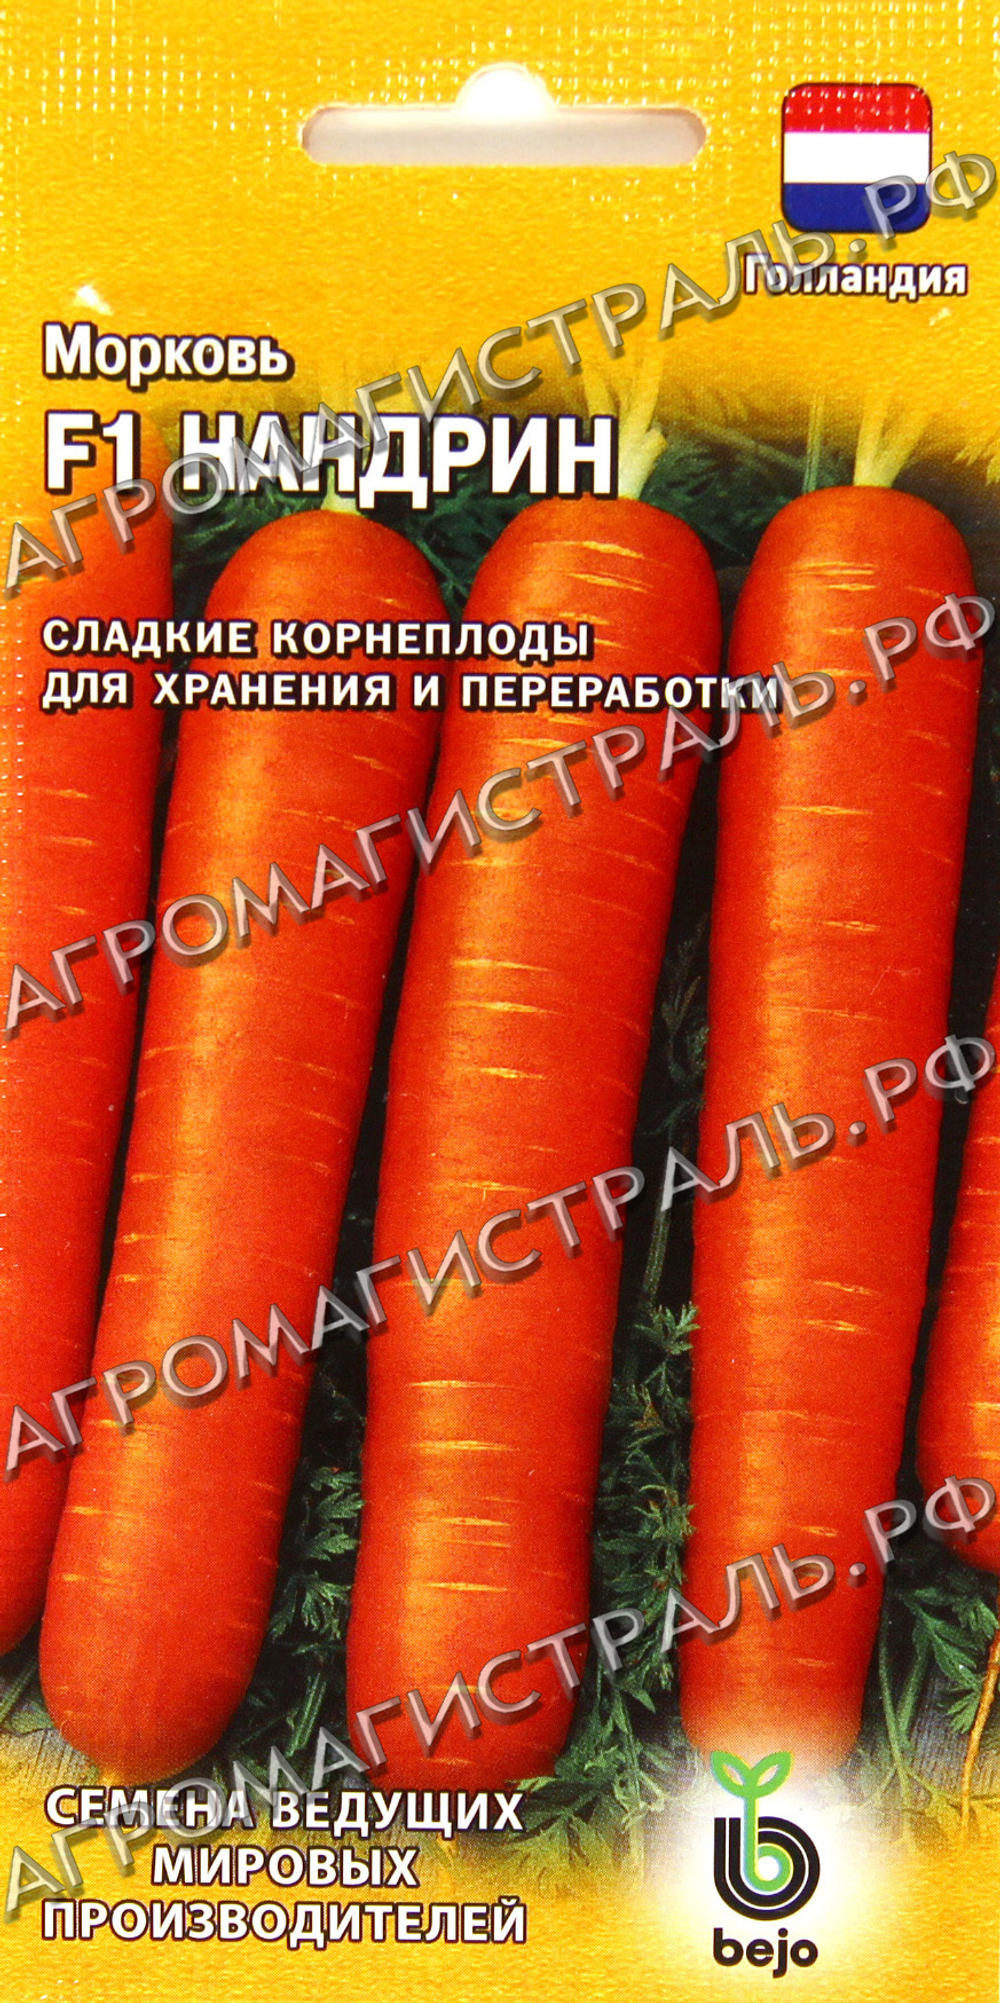 Морковь Нандрин Гавриш Ц